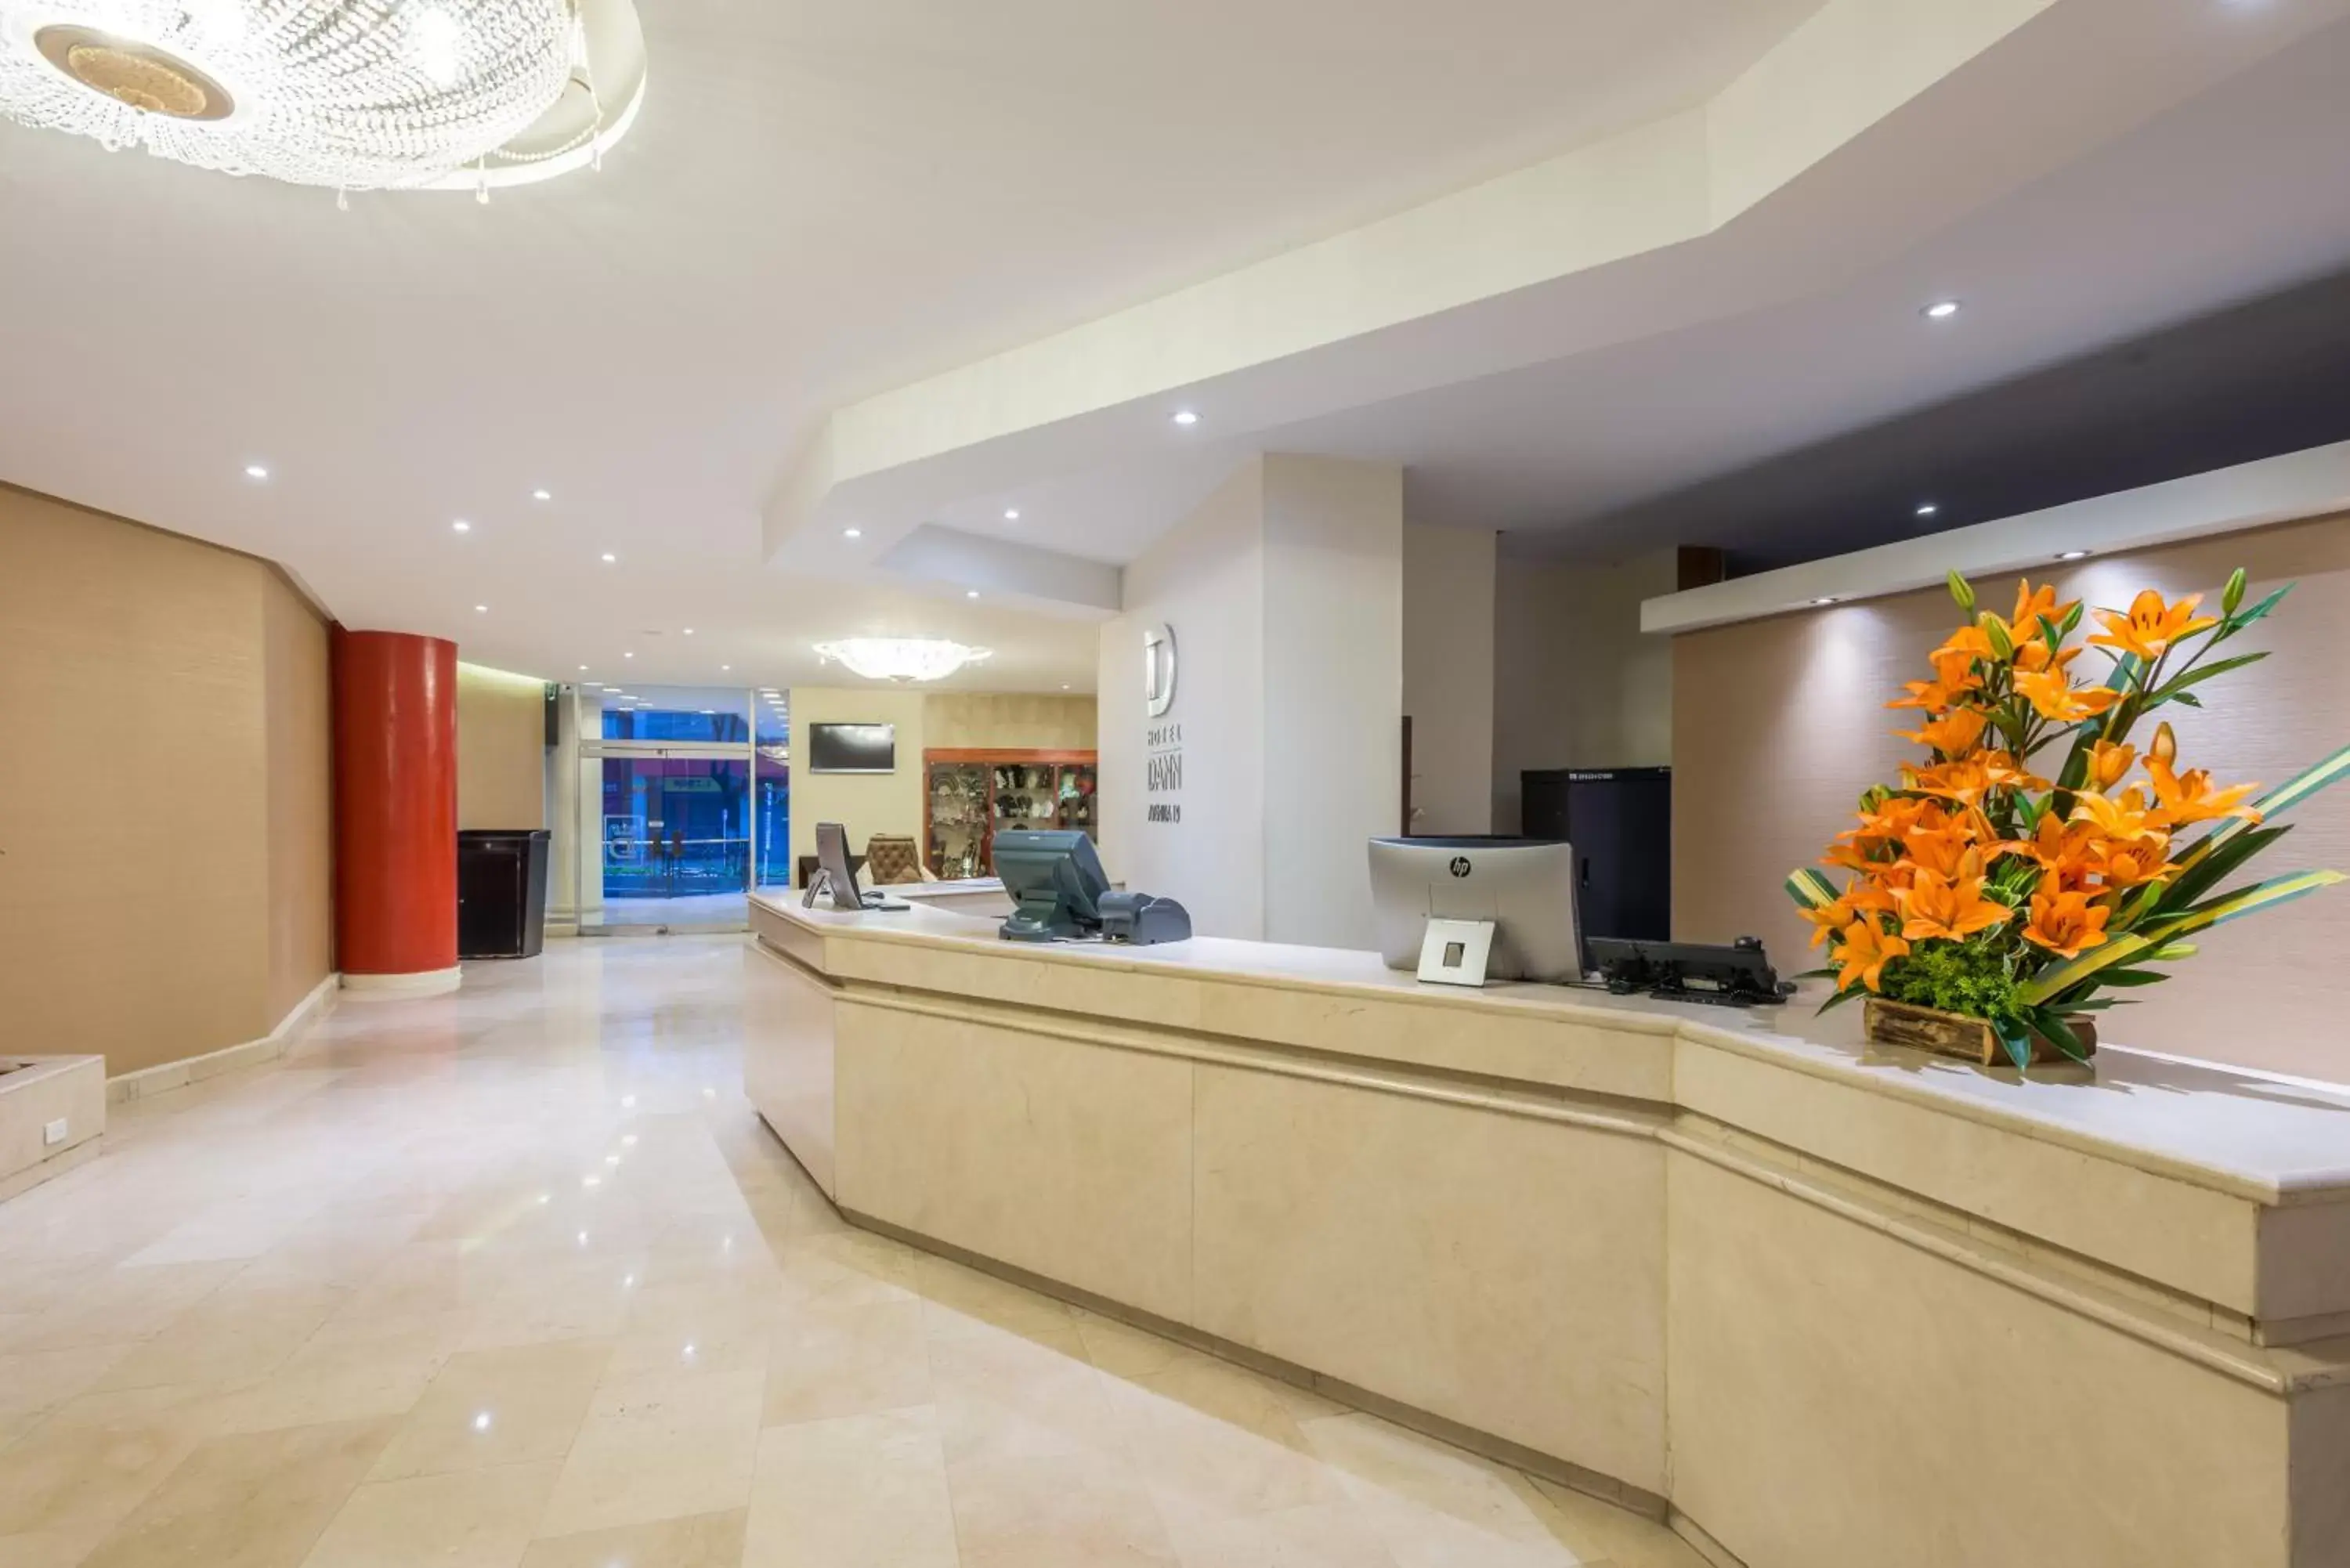 Lobby or reception, Lobby/Reception in Hotel Dann Av. 19